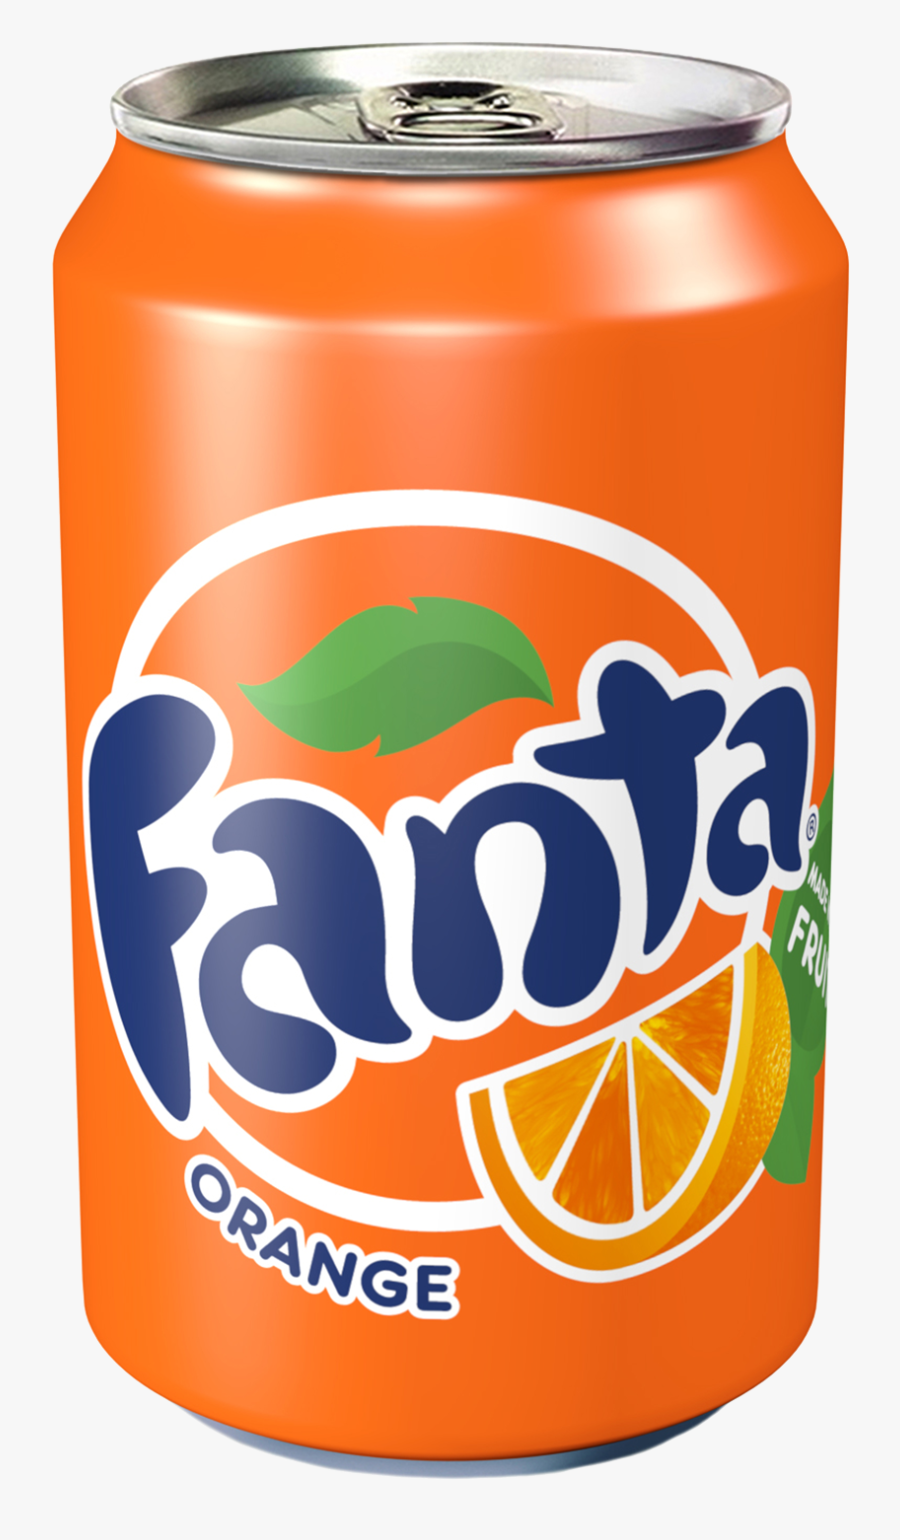 Coca Cola Clipart 330ml Png - Orange Fanta Soda Can, Transparent Clipart